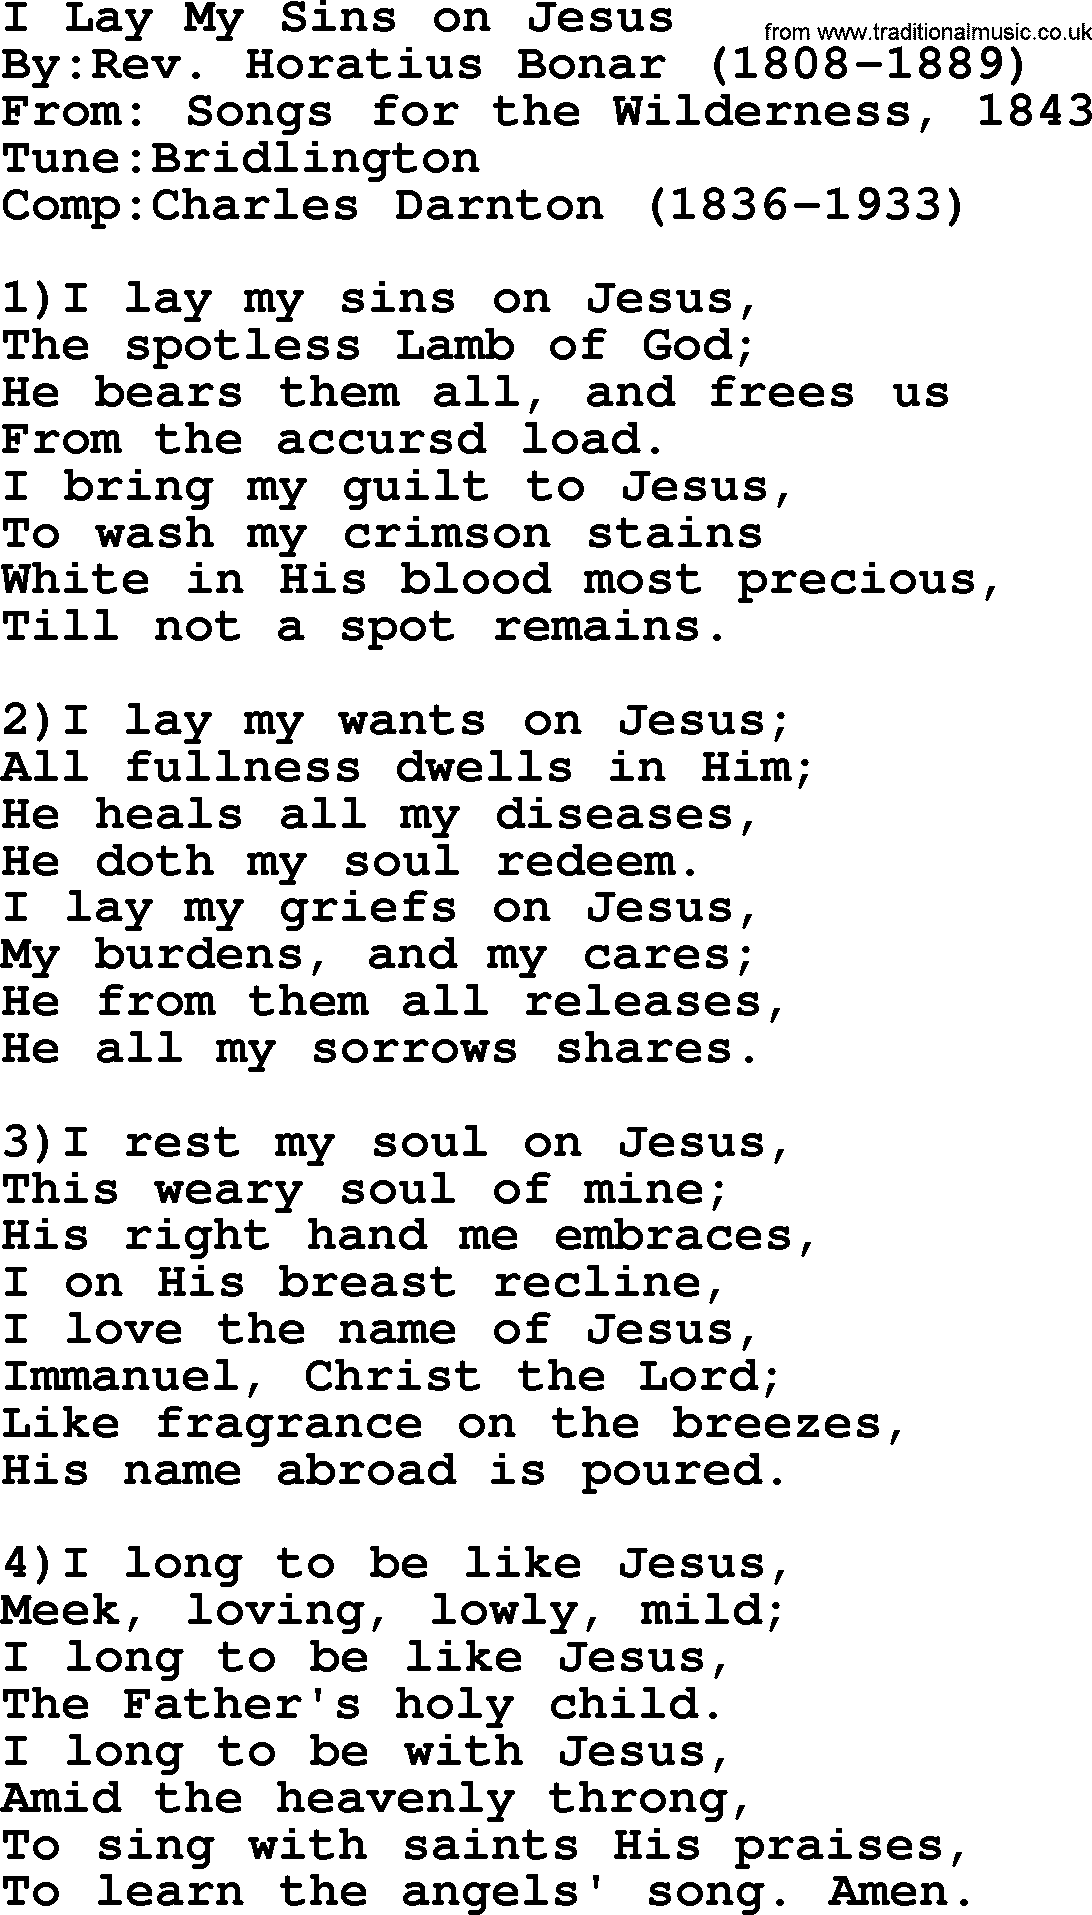 Methodist Hymn: I Lay My Sins On Jesus, lyrics